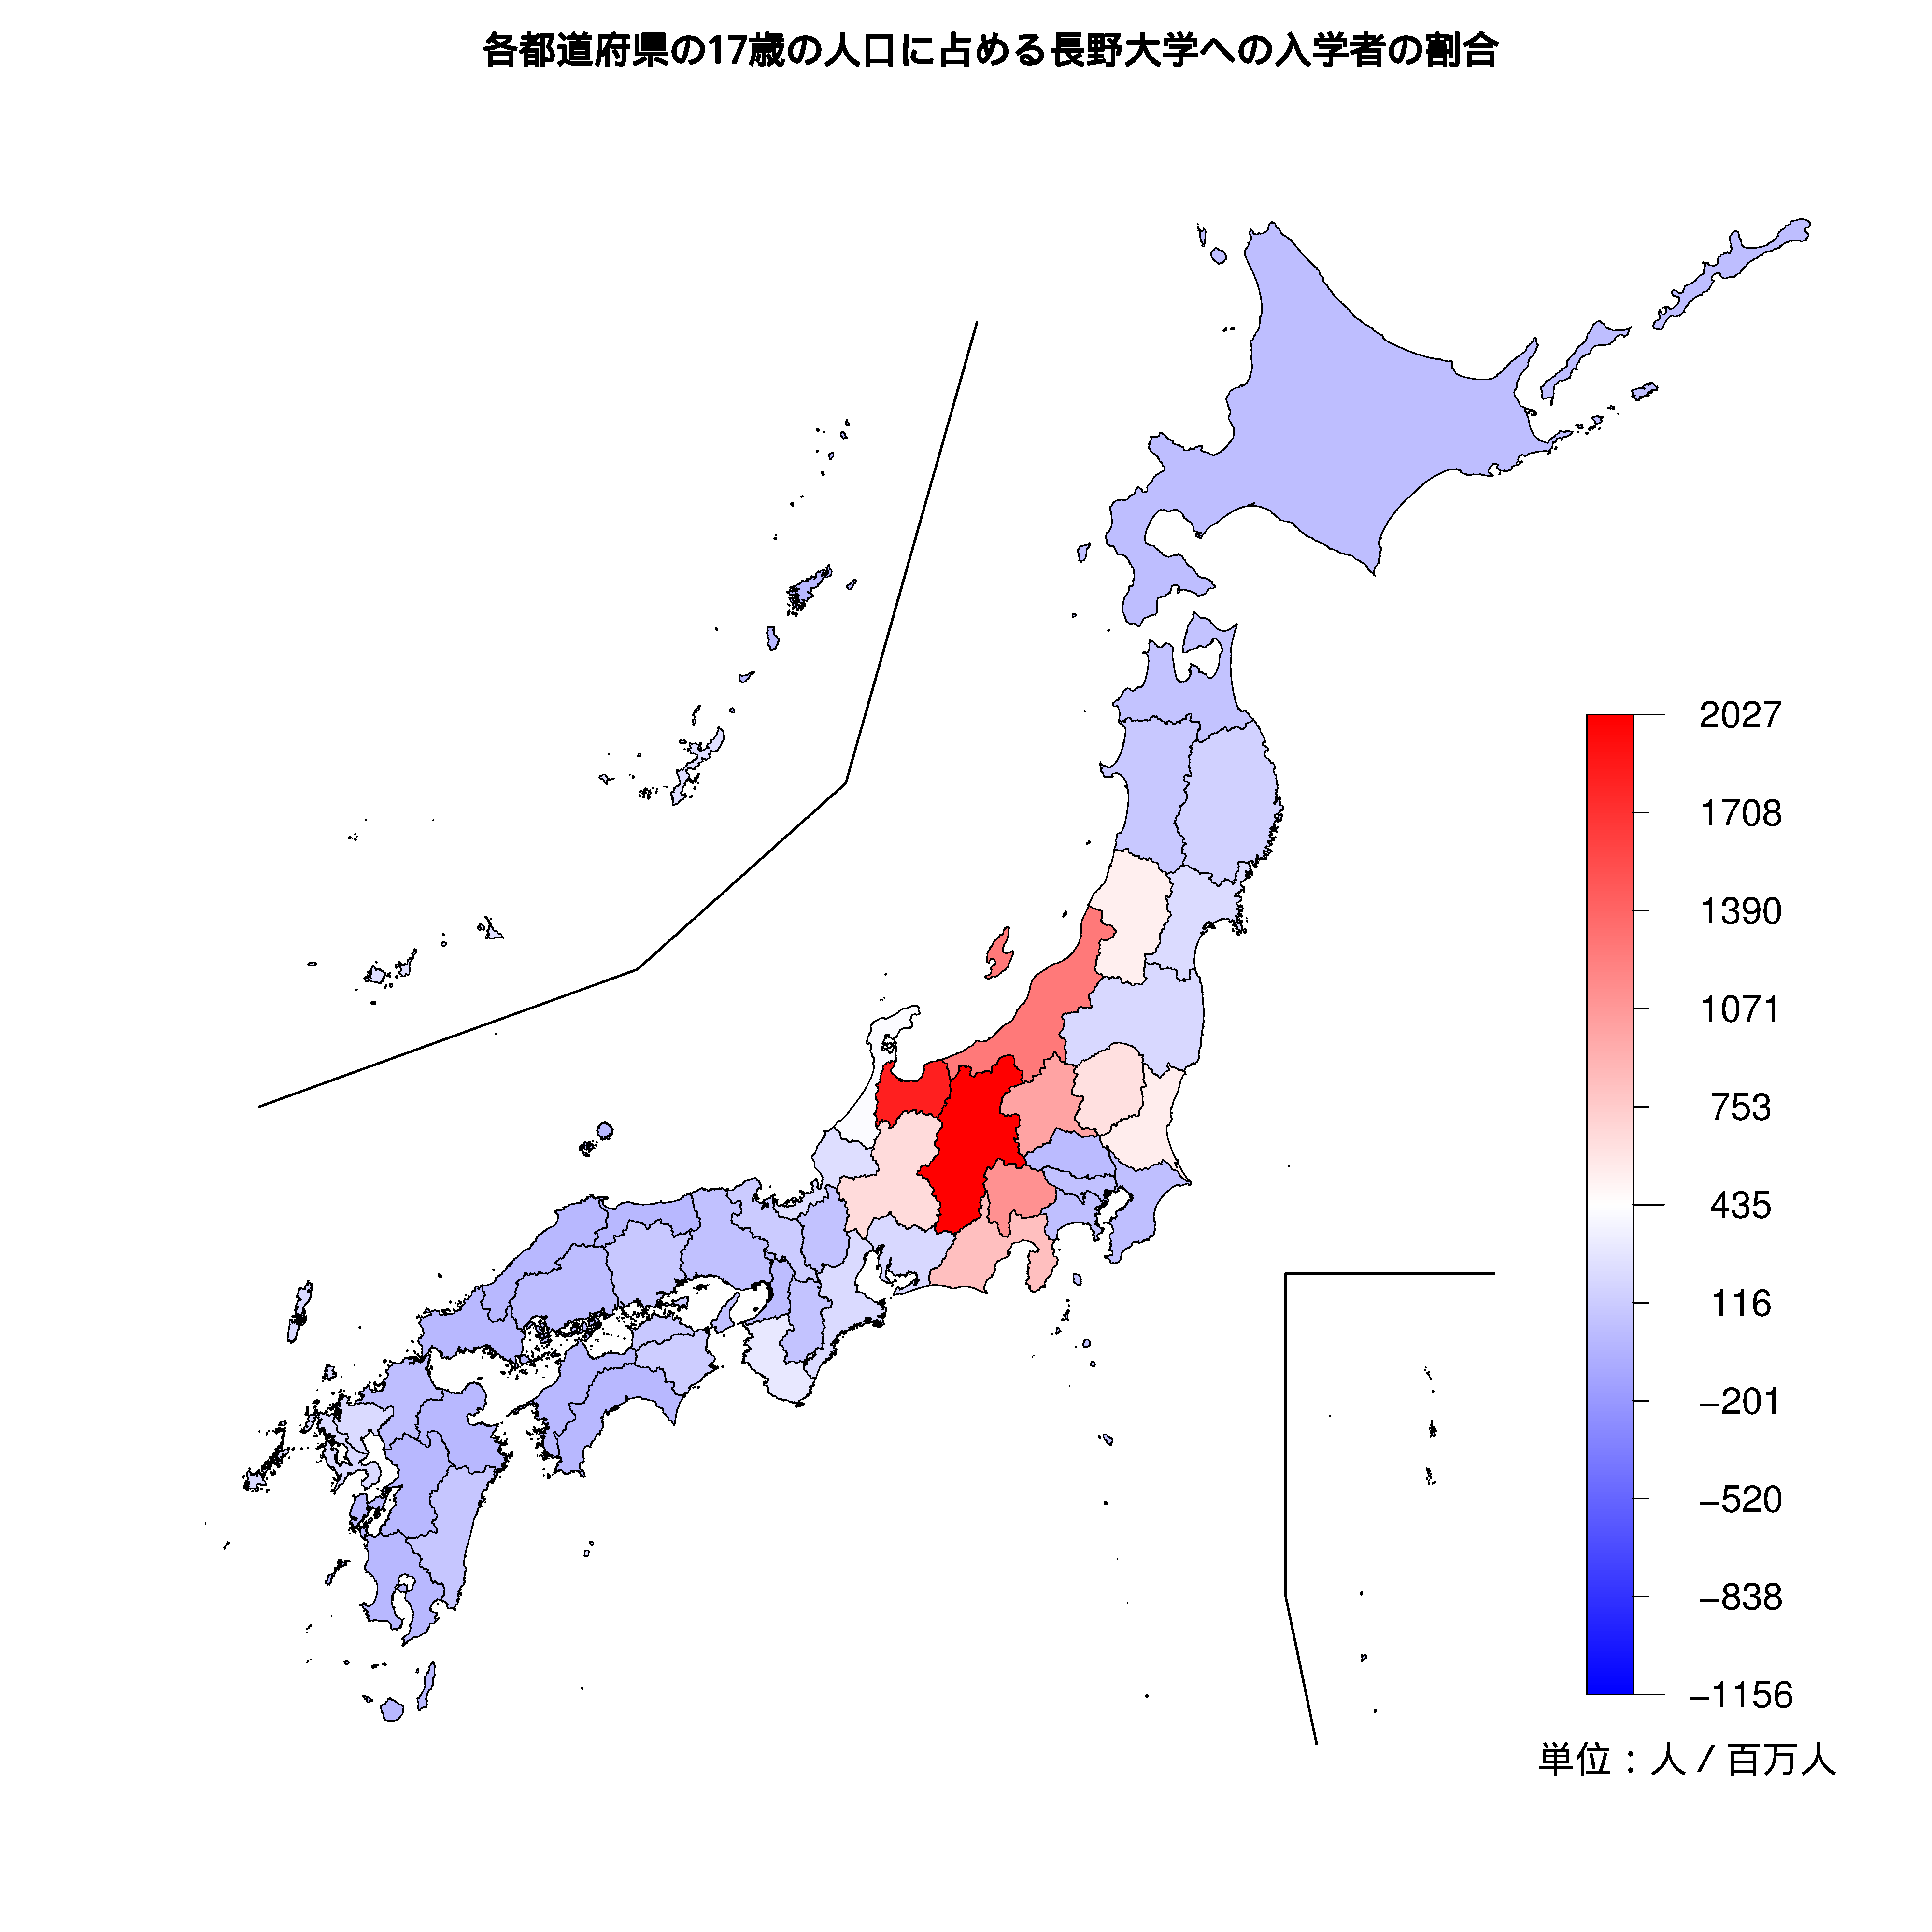 長野大学への入学者が多い都道府県の色分け地図